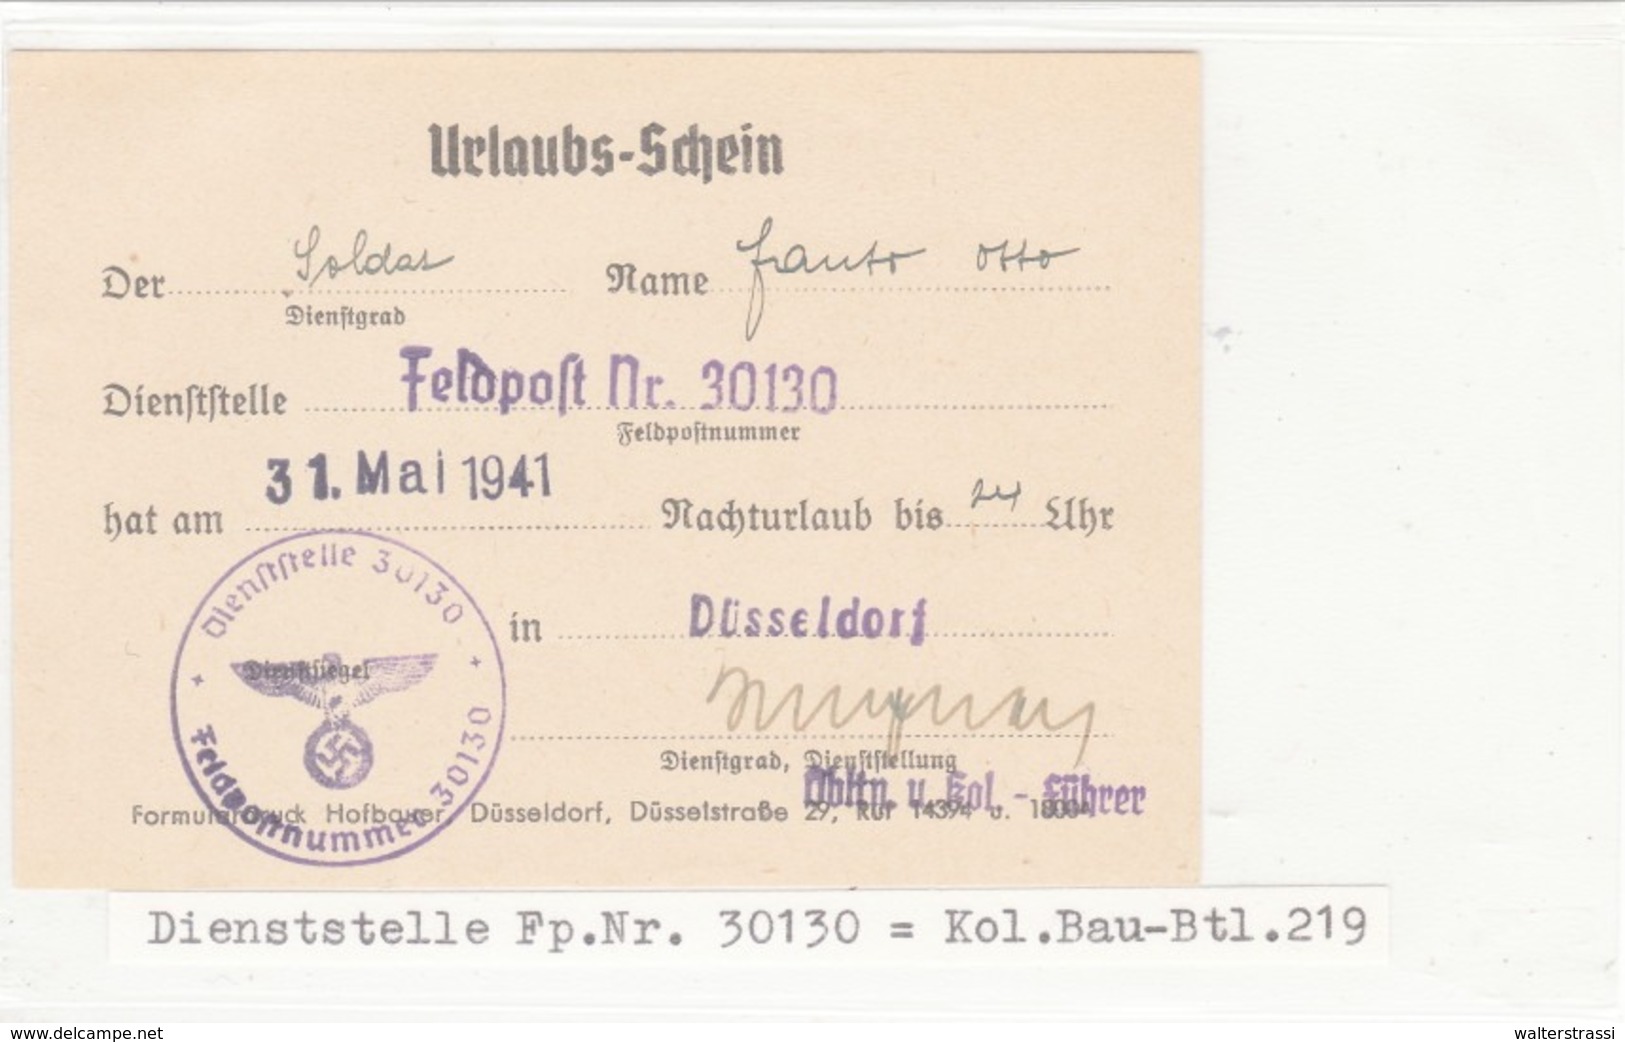 Urlaubs - Schein, FELDPOST Nr. 30130, Düsseldorf - Lettres & Documents